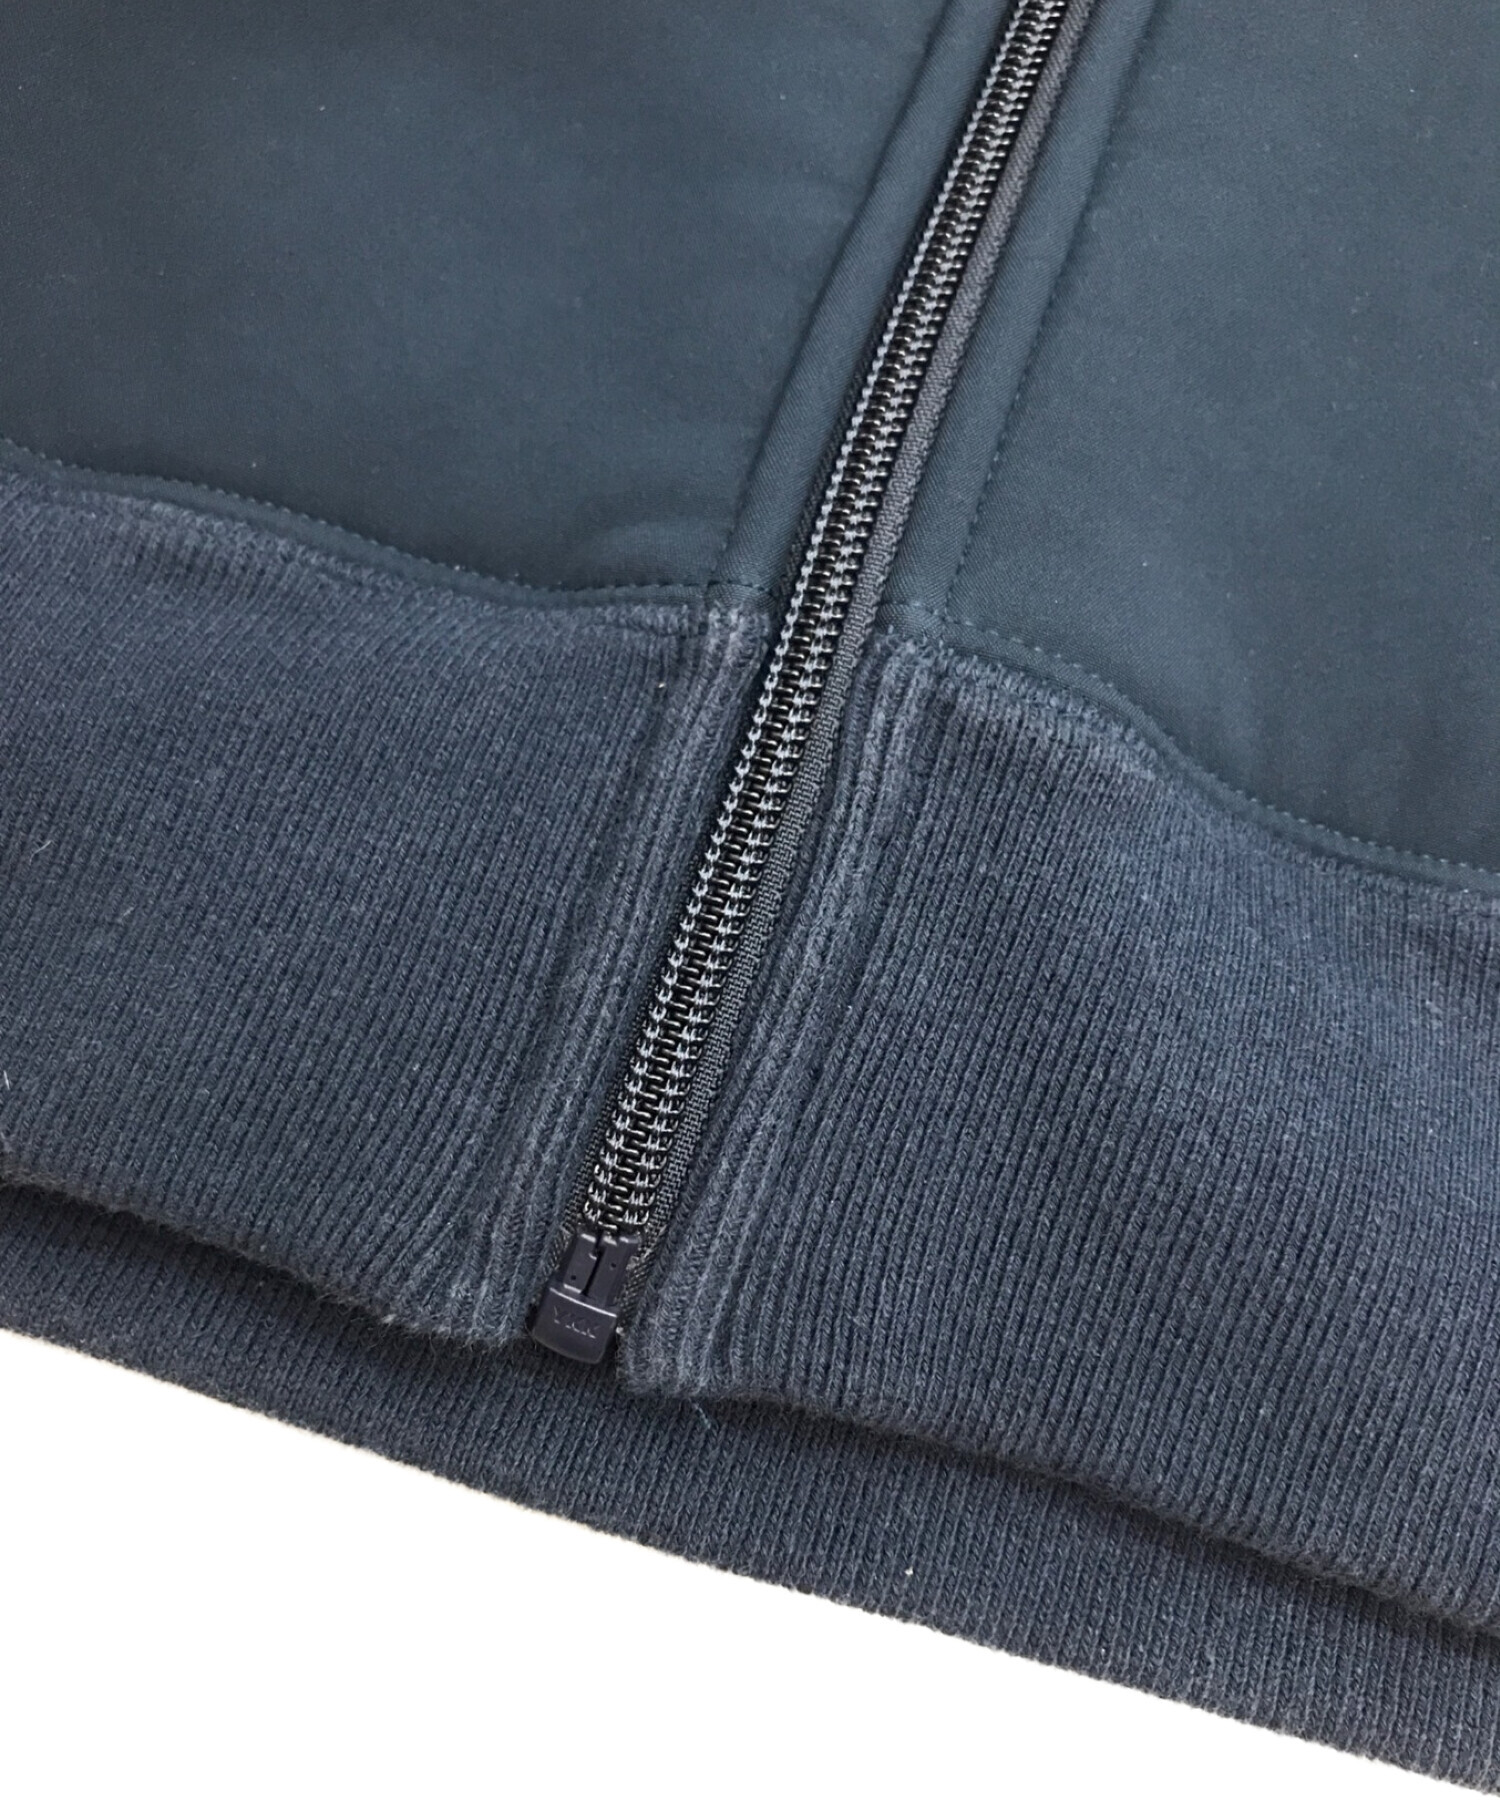 SUPREME (シュプリーム) WINDSTOPPER Zip Up Hooded Sweatshirt / ウィンドストッパー ジップアップ  フーデッド スウェットシャツ / ジップアップパーカー ネイビー サイズ:XL